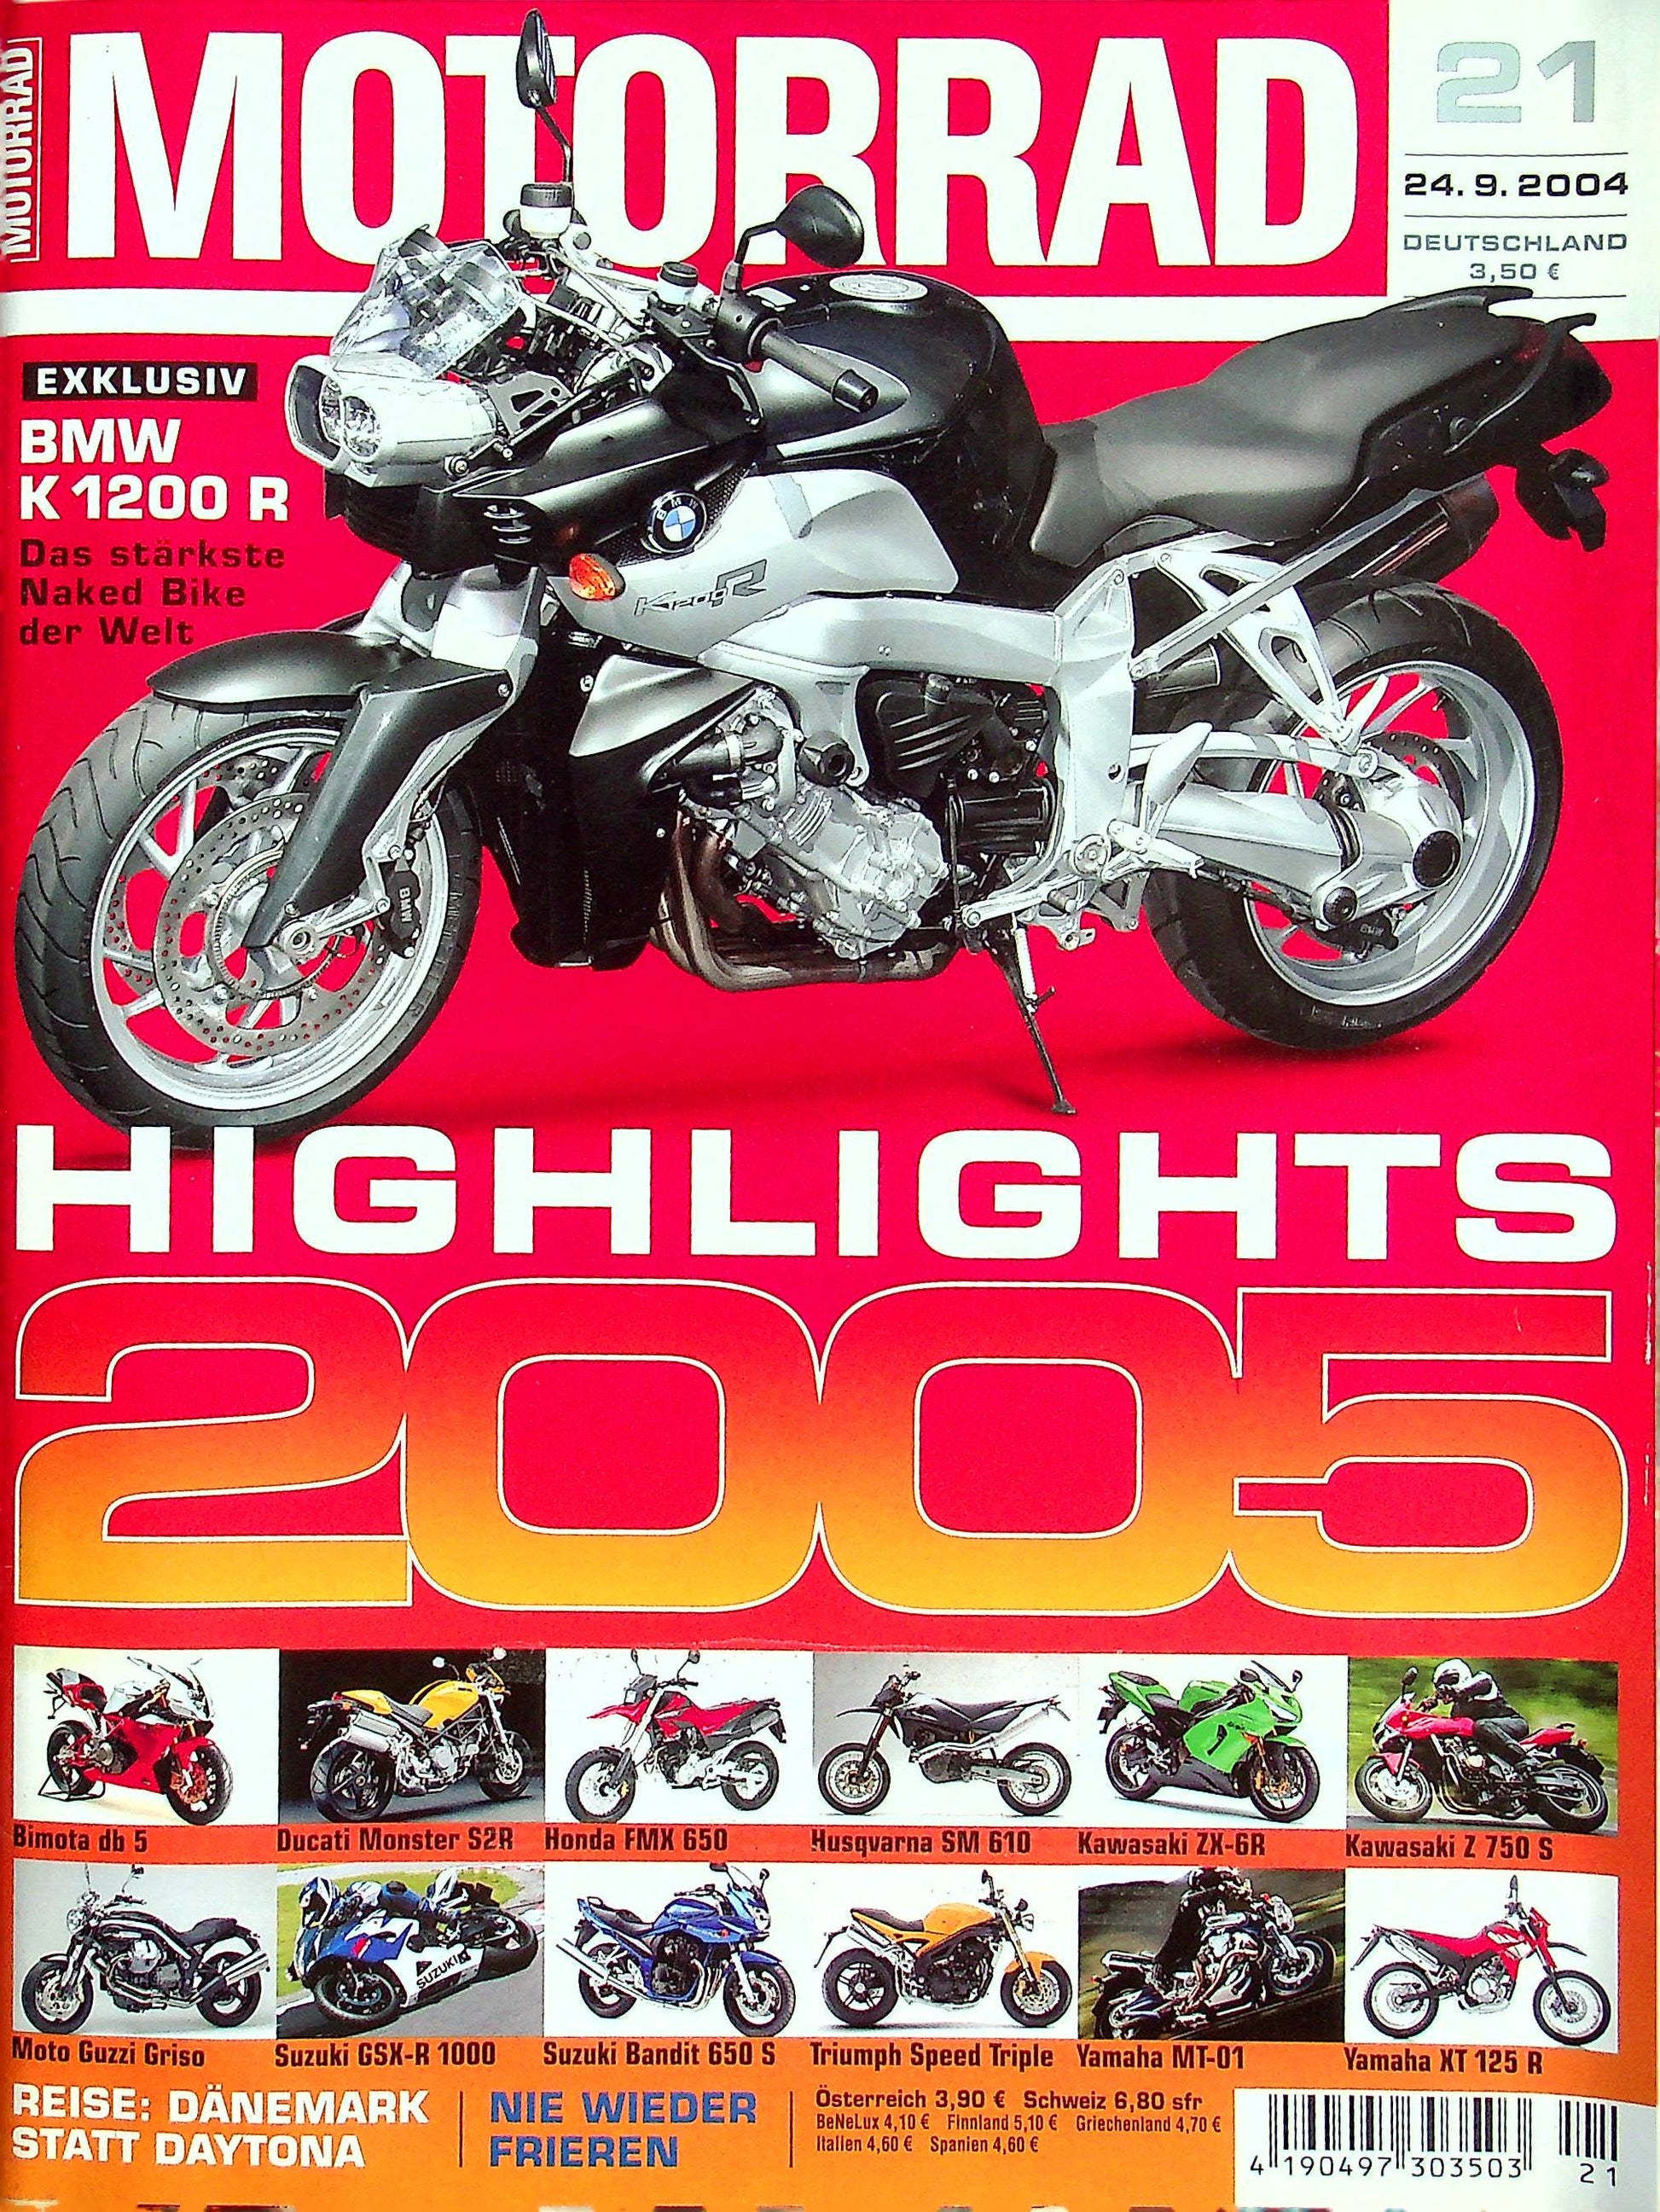 Motorrad 21/2004